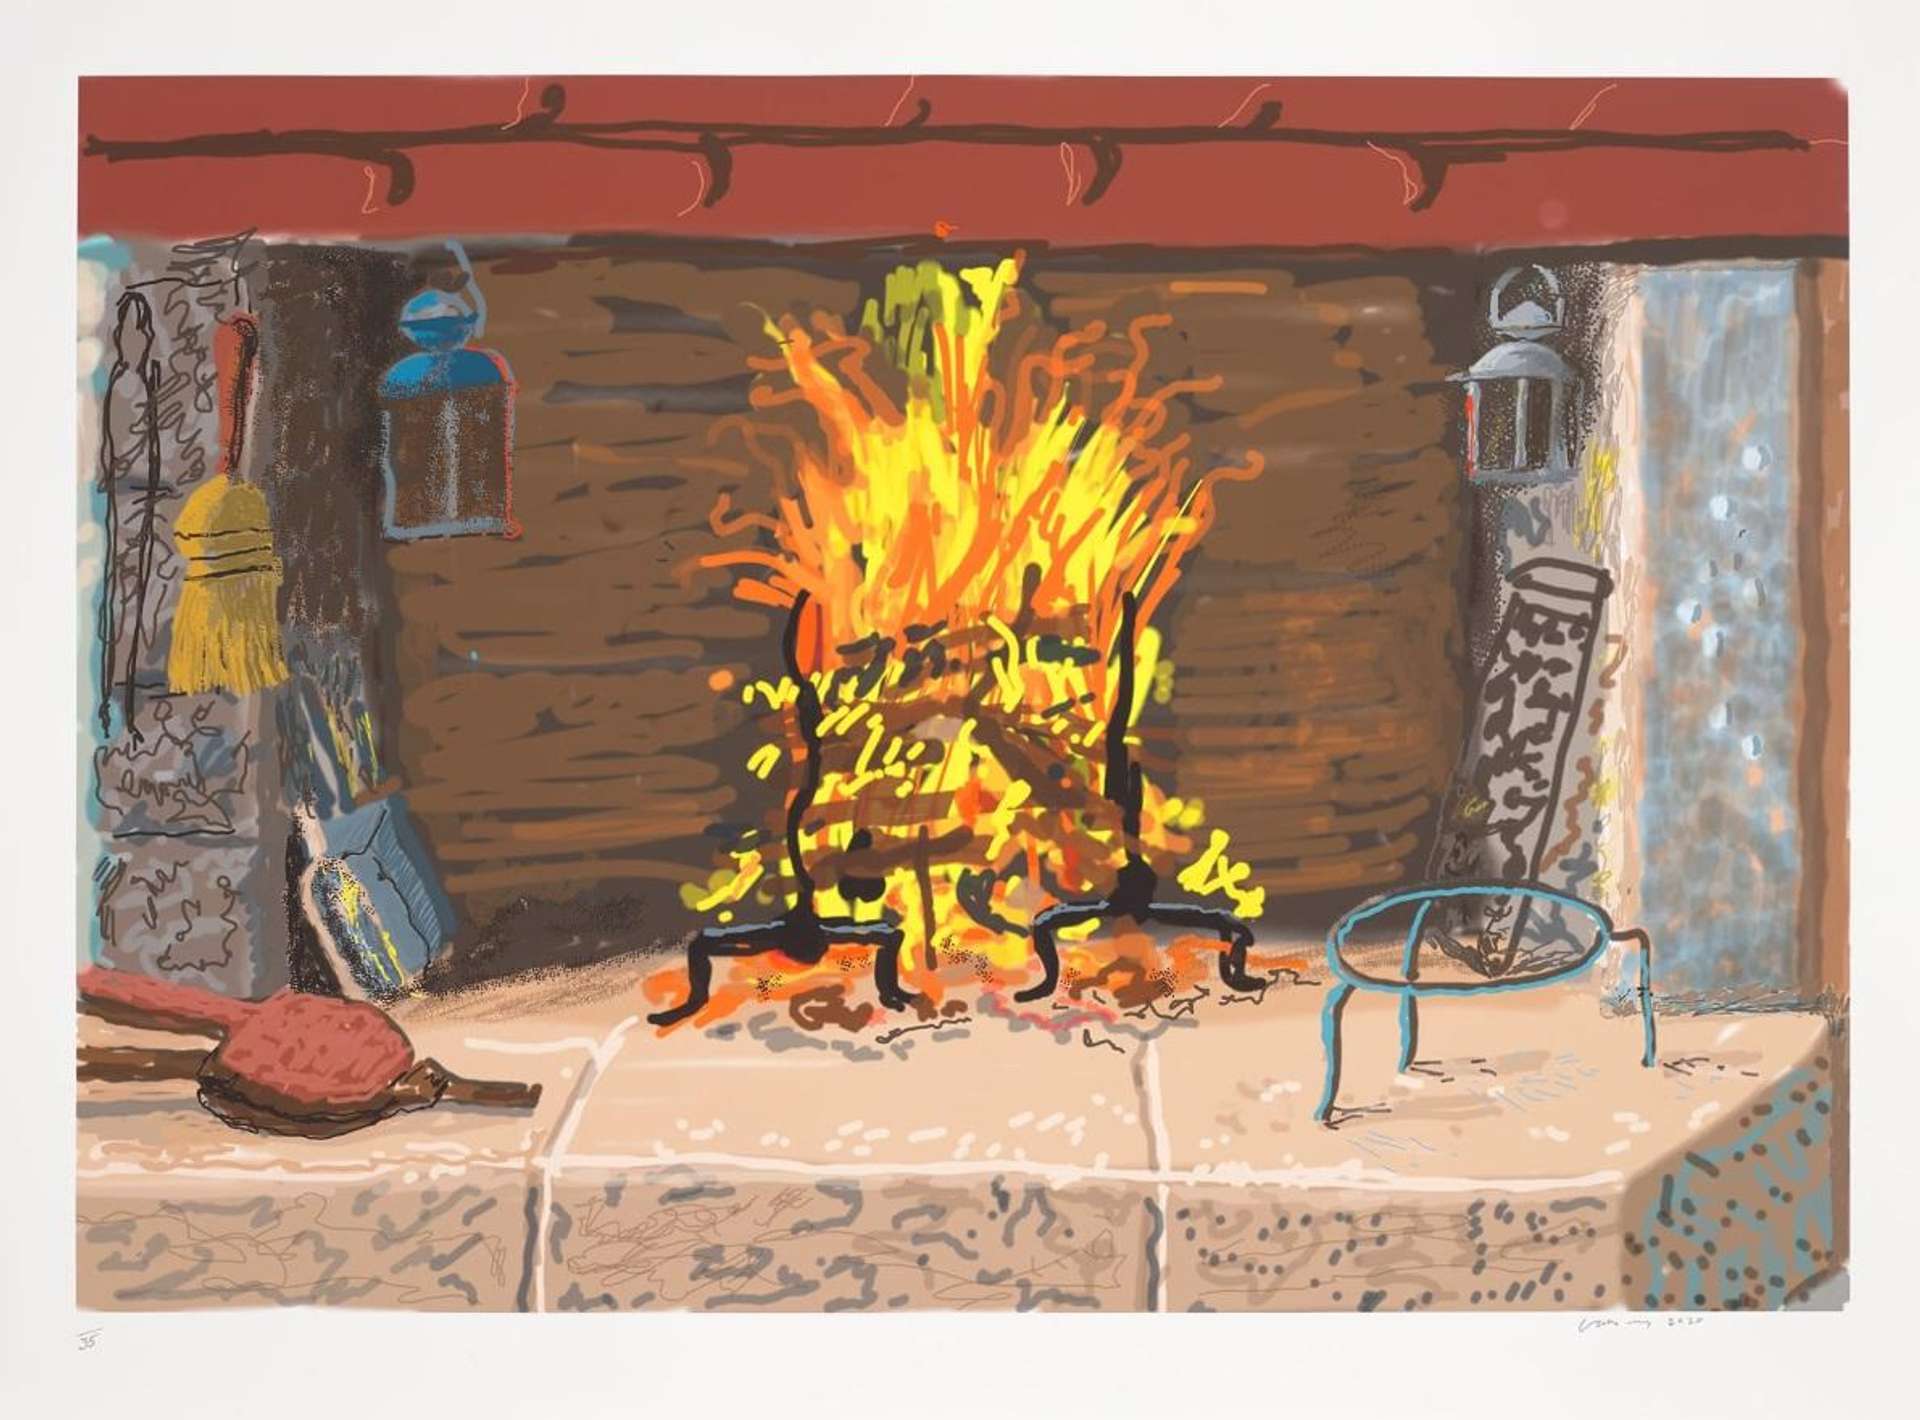 A Bigger Fire by David Hockney